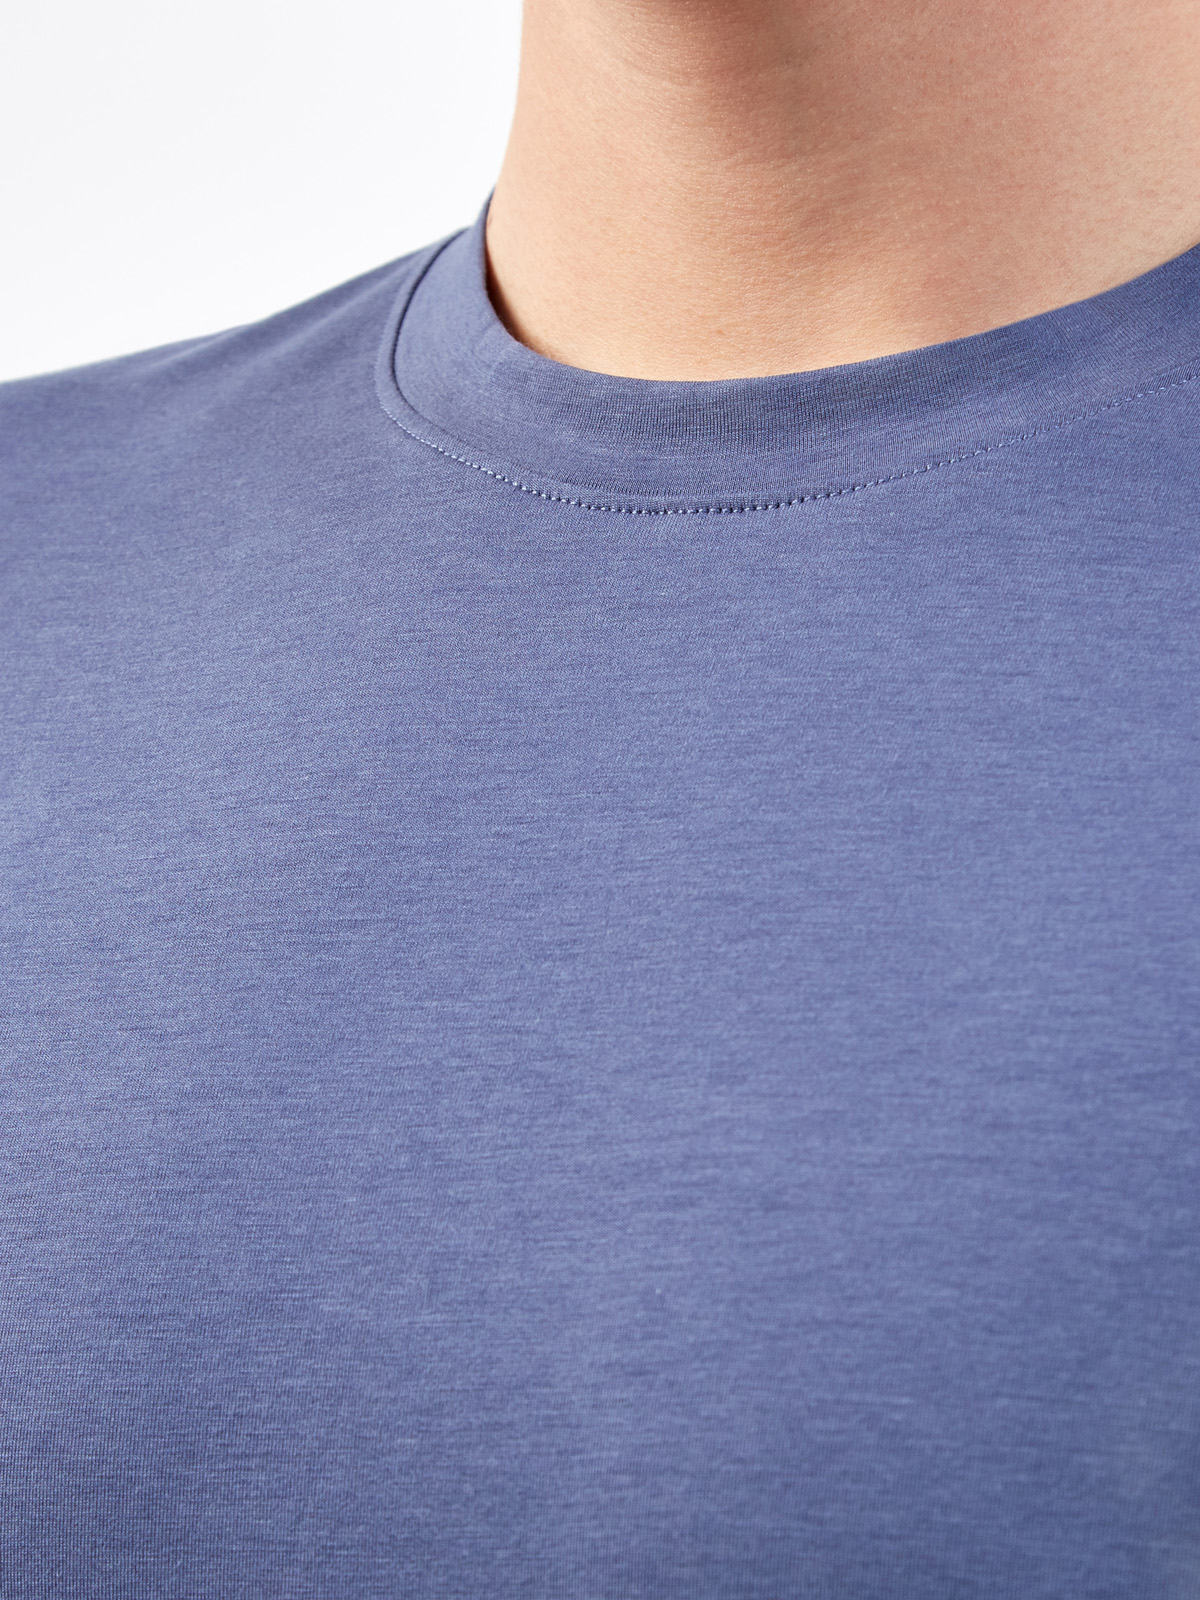 Однотонная футболка из джерси на основе хлопка и лиоцелла CUDGI, цвет синий, размер L;XL;2XL;3XL;M - фото 5